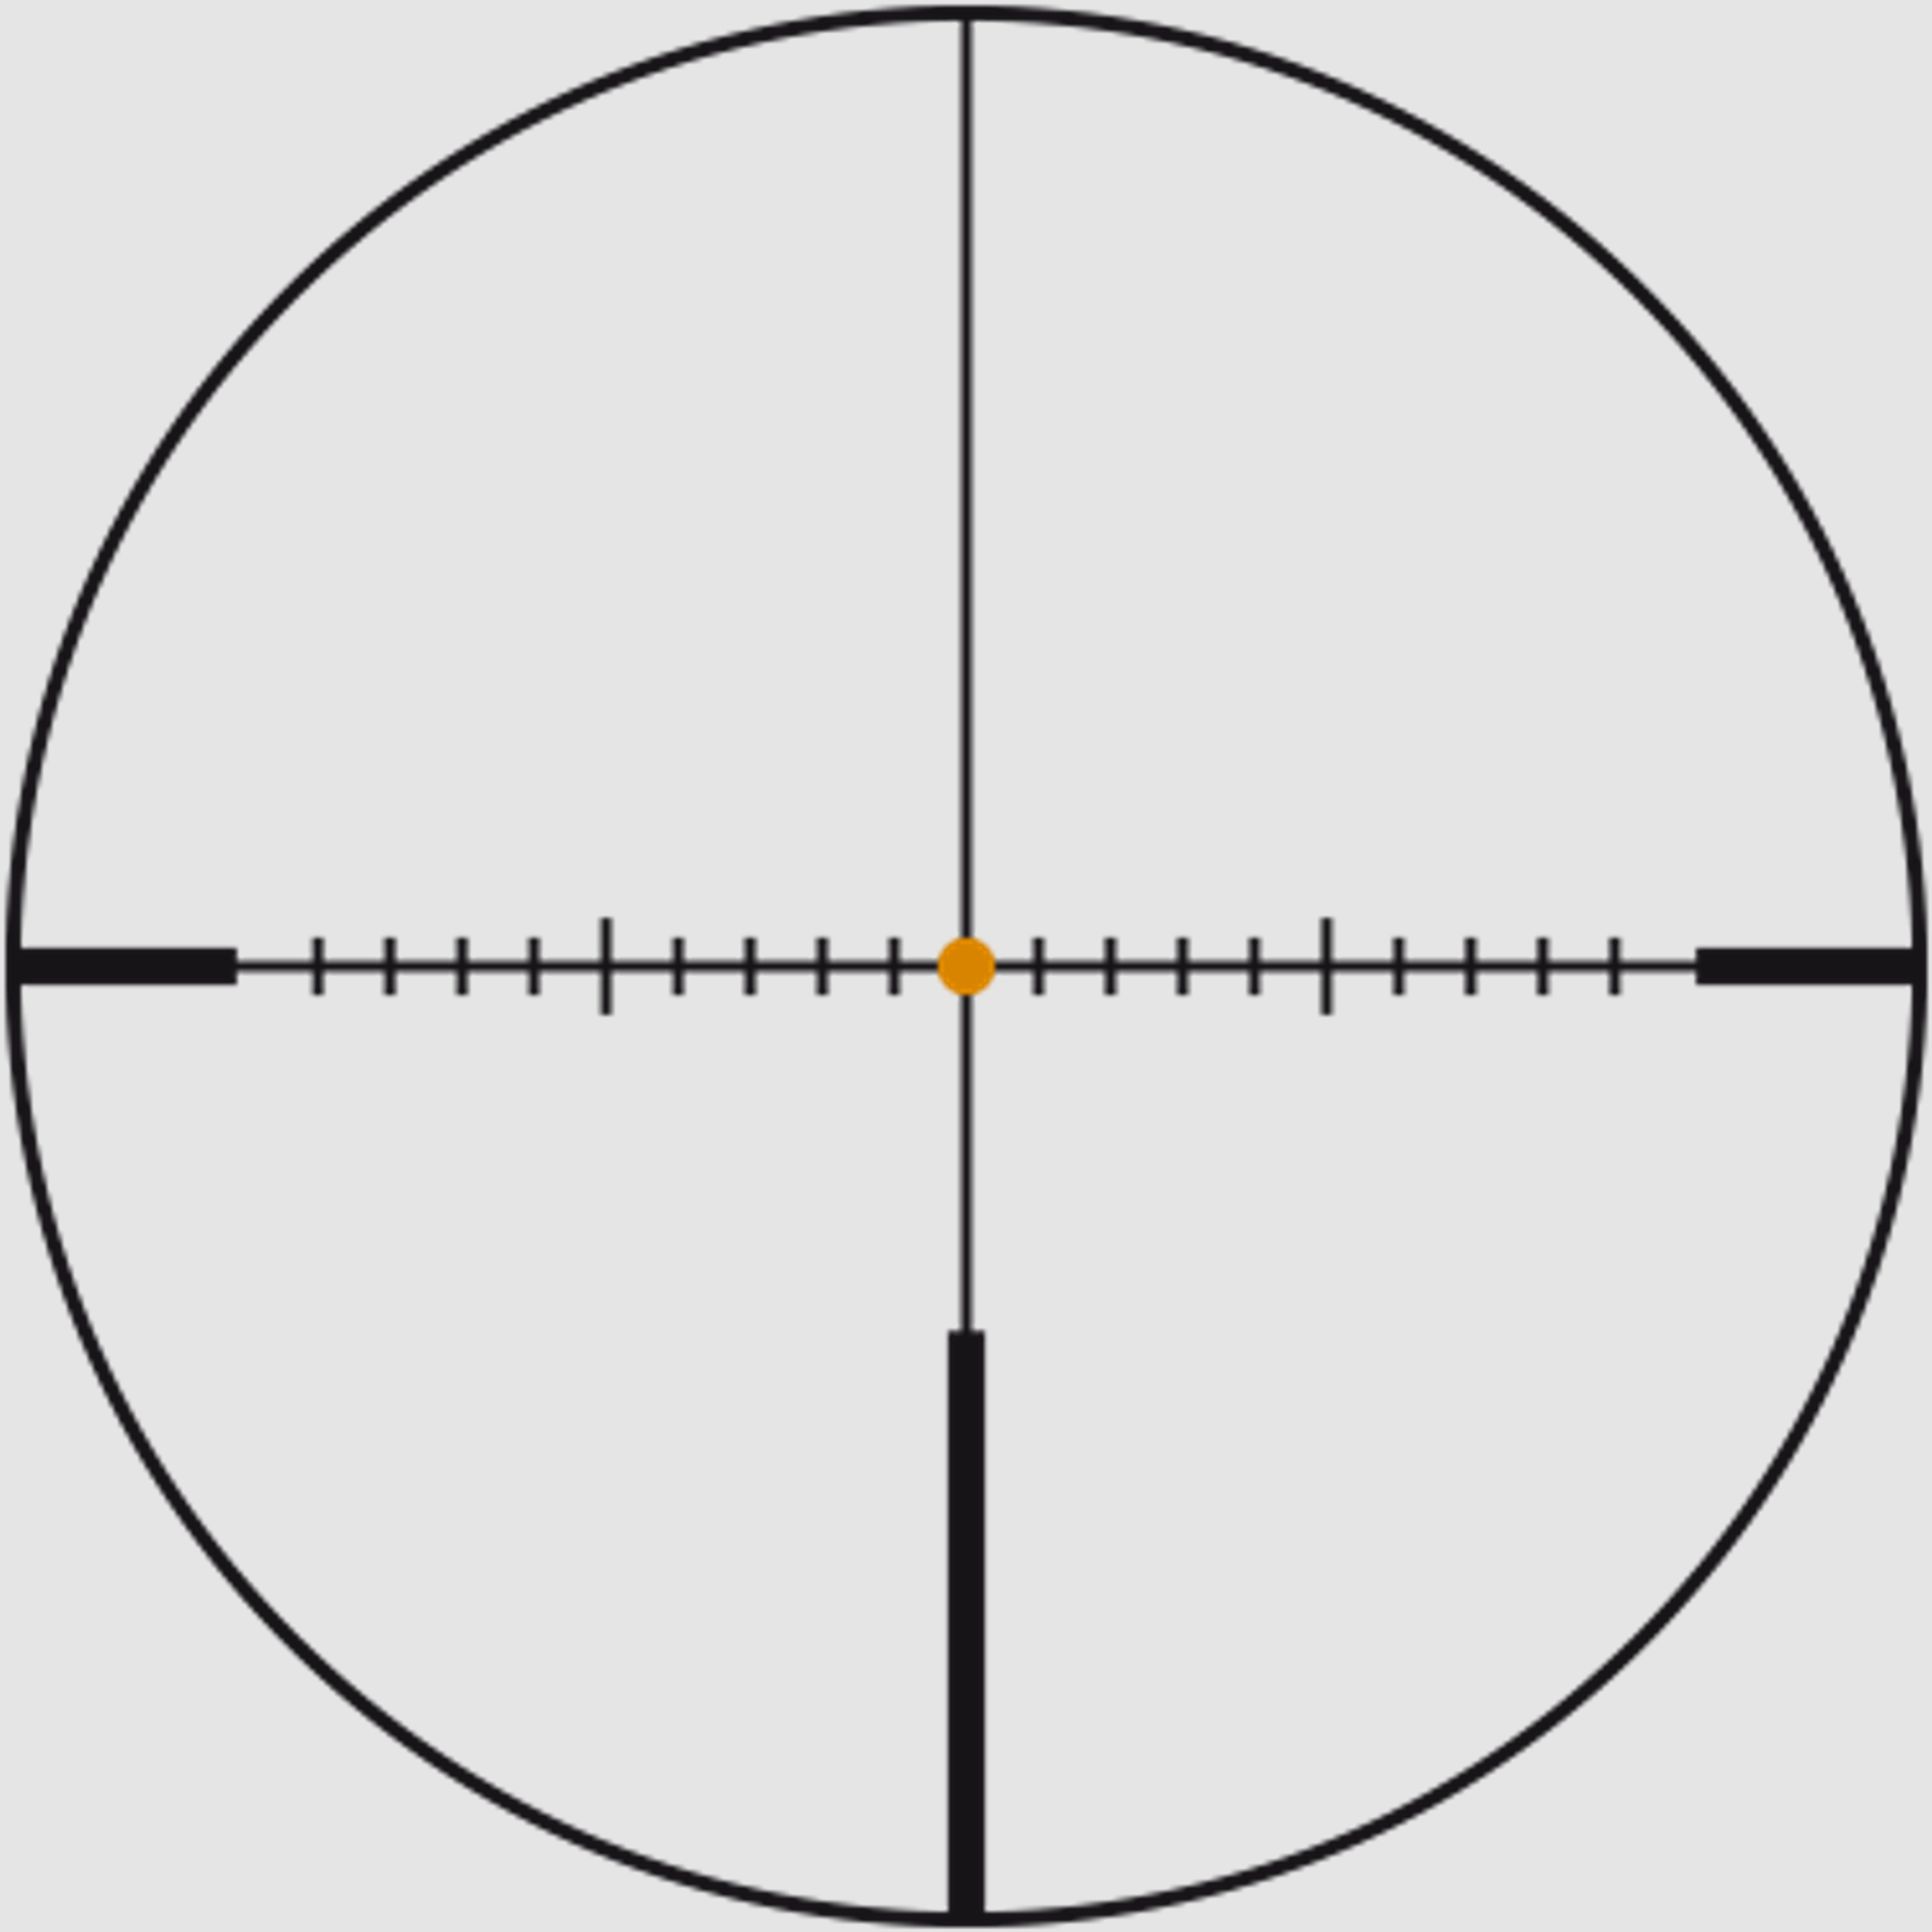 SWAROVSKI Zielfernrohr mit Leuchtabsehen 5-25x56 X5i P 1/4MOA (30mm) Abs. 4W-I/BRM-I/4WX-I